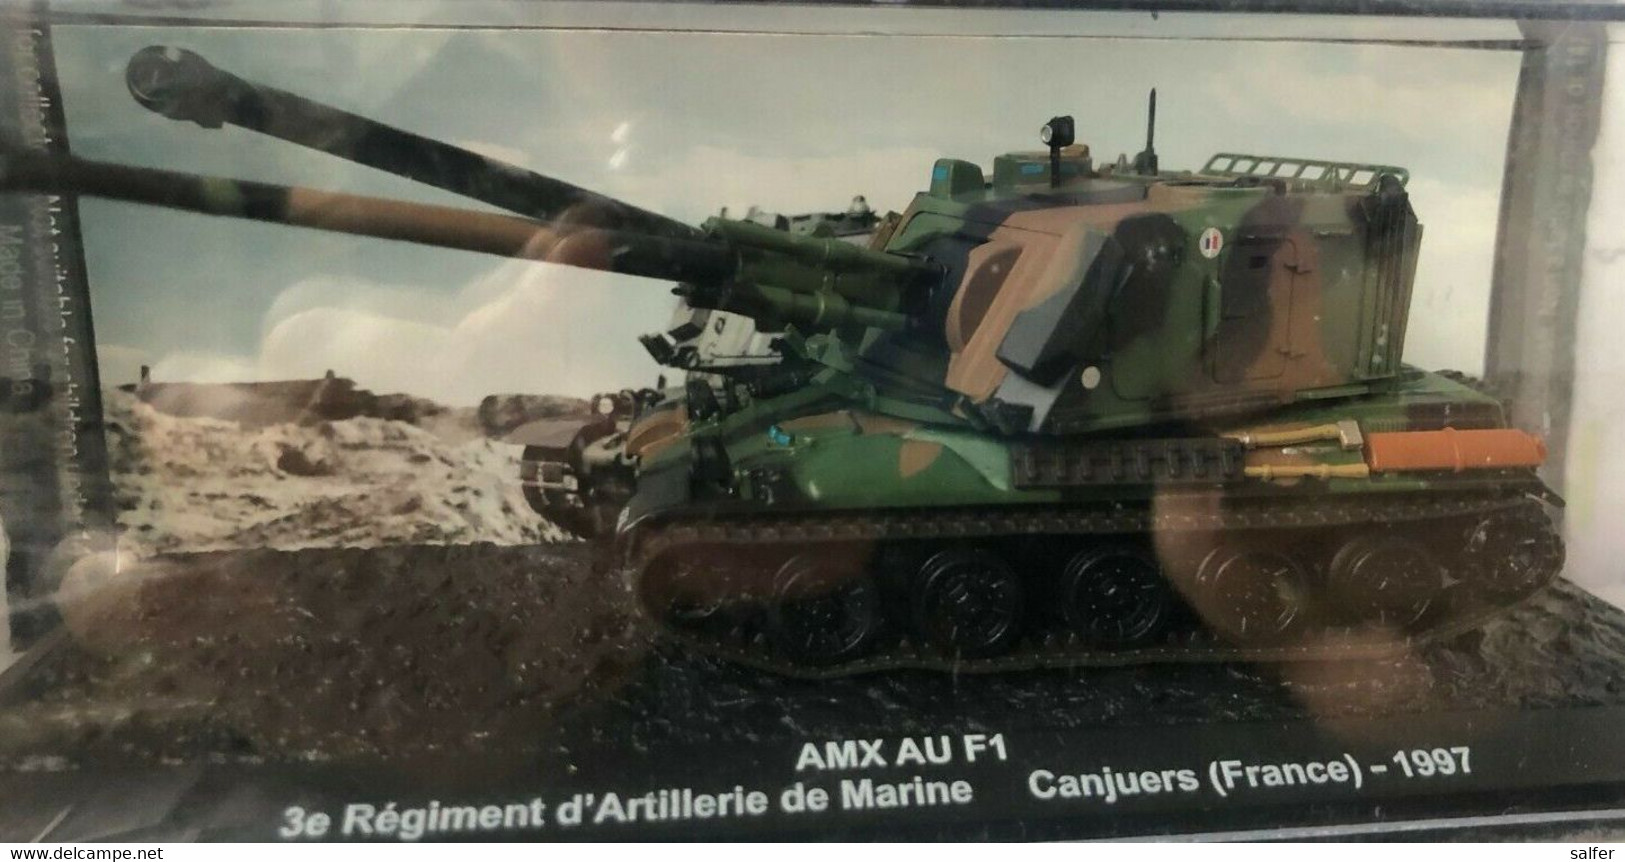 .CARRO ARMATO TANK AMX AU F1 Nuovo In Blister - Carri Armati